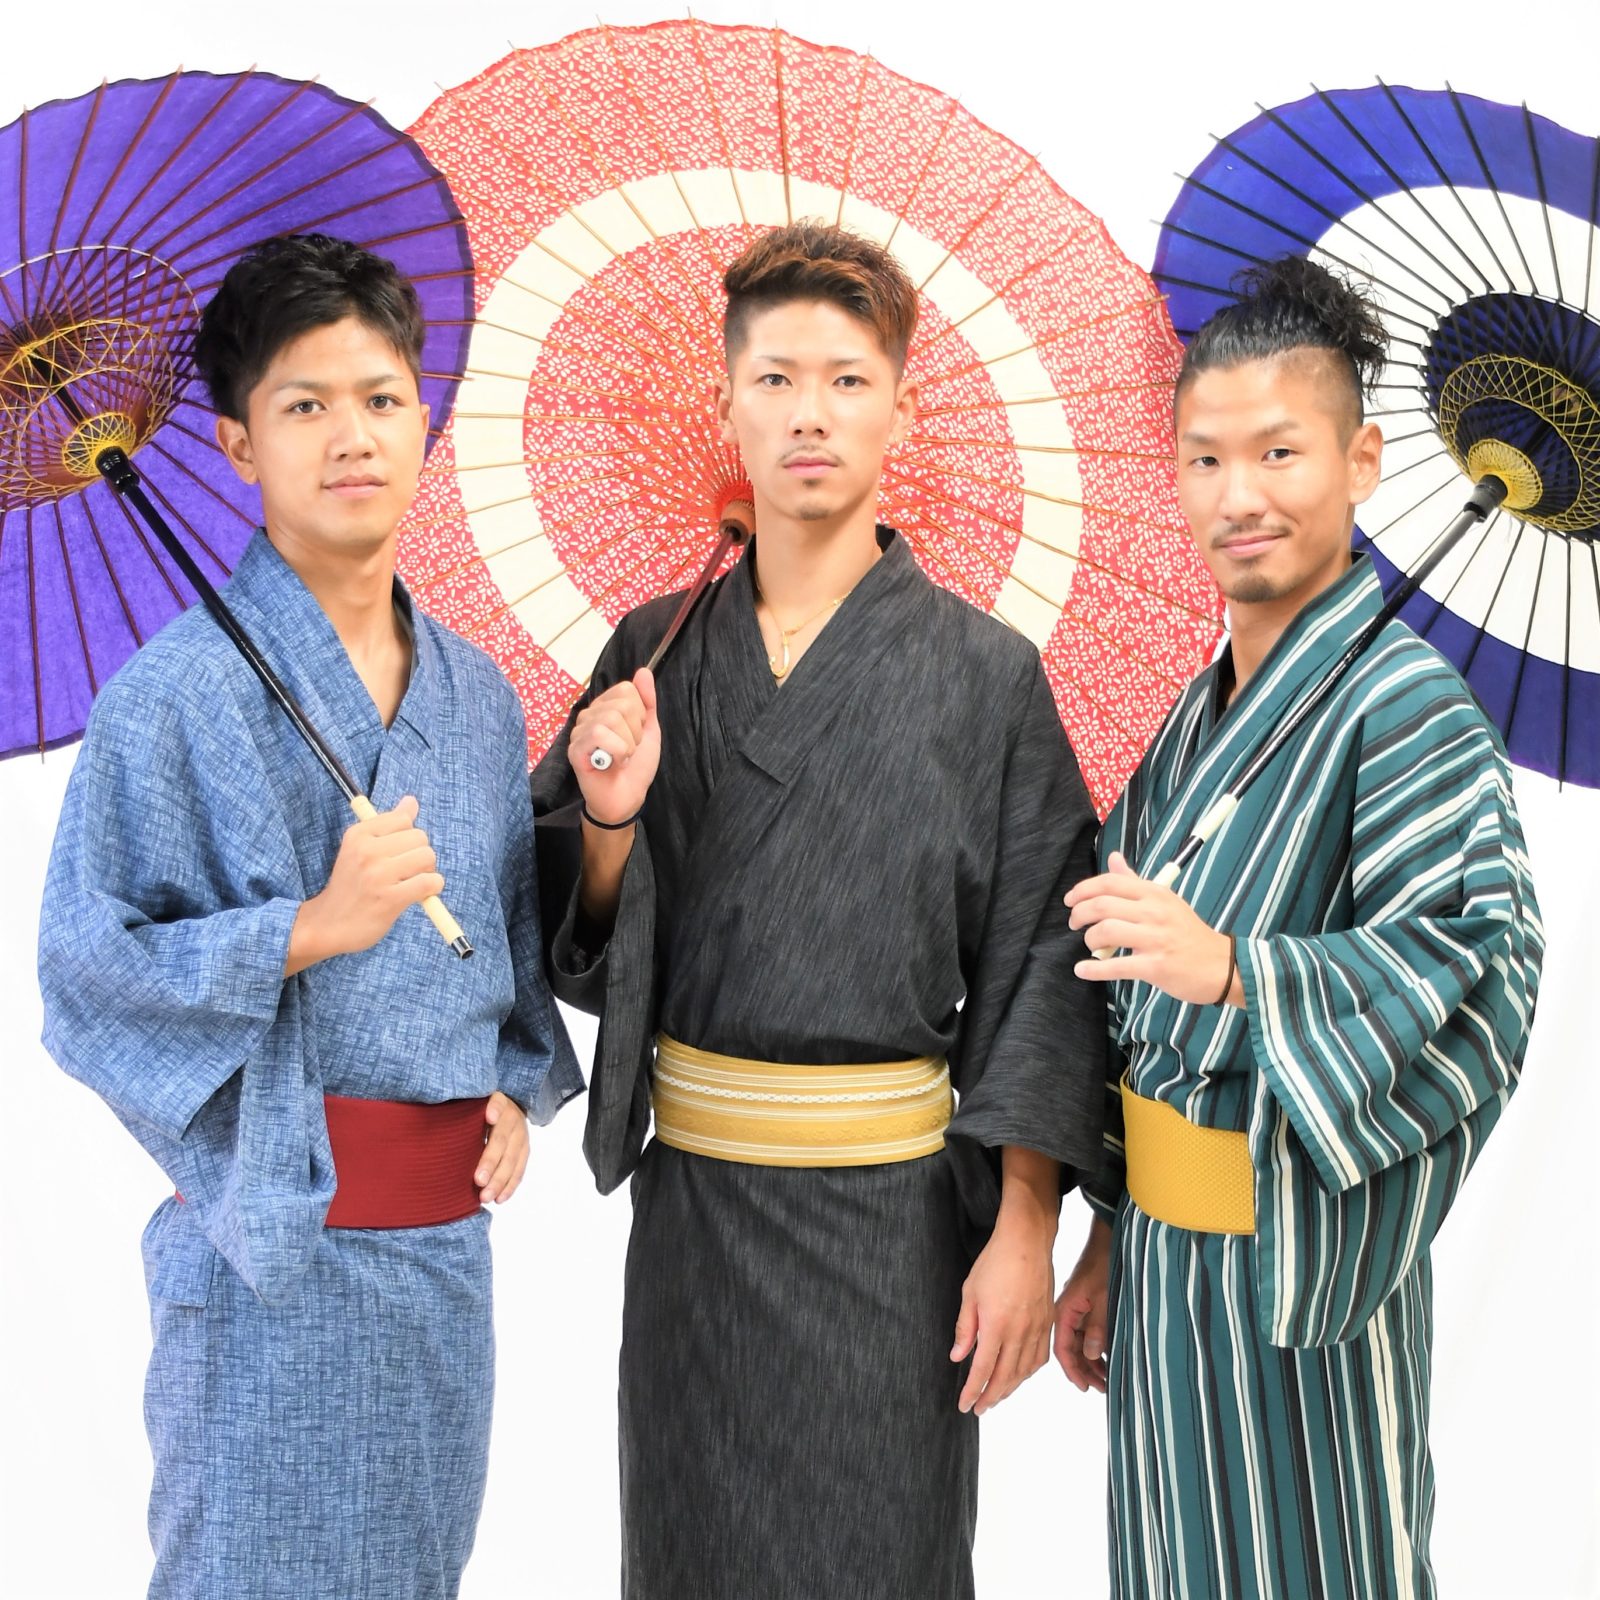 広島から大吉に遊びに来てくれたイケメン男子3人 みんなそれぞれメンズ浴衣をカッコ良く着こなしてくれましたぁ 浅草着物レンタル 格安 1 0 は大吉だけ